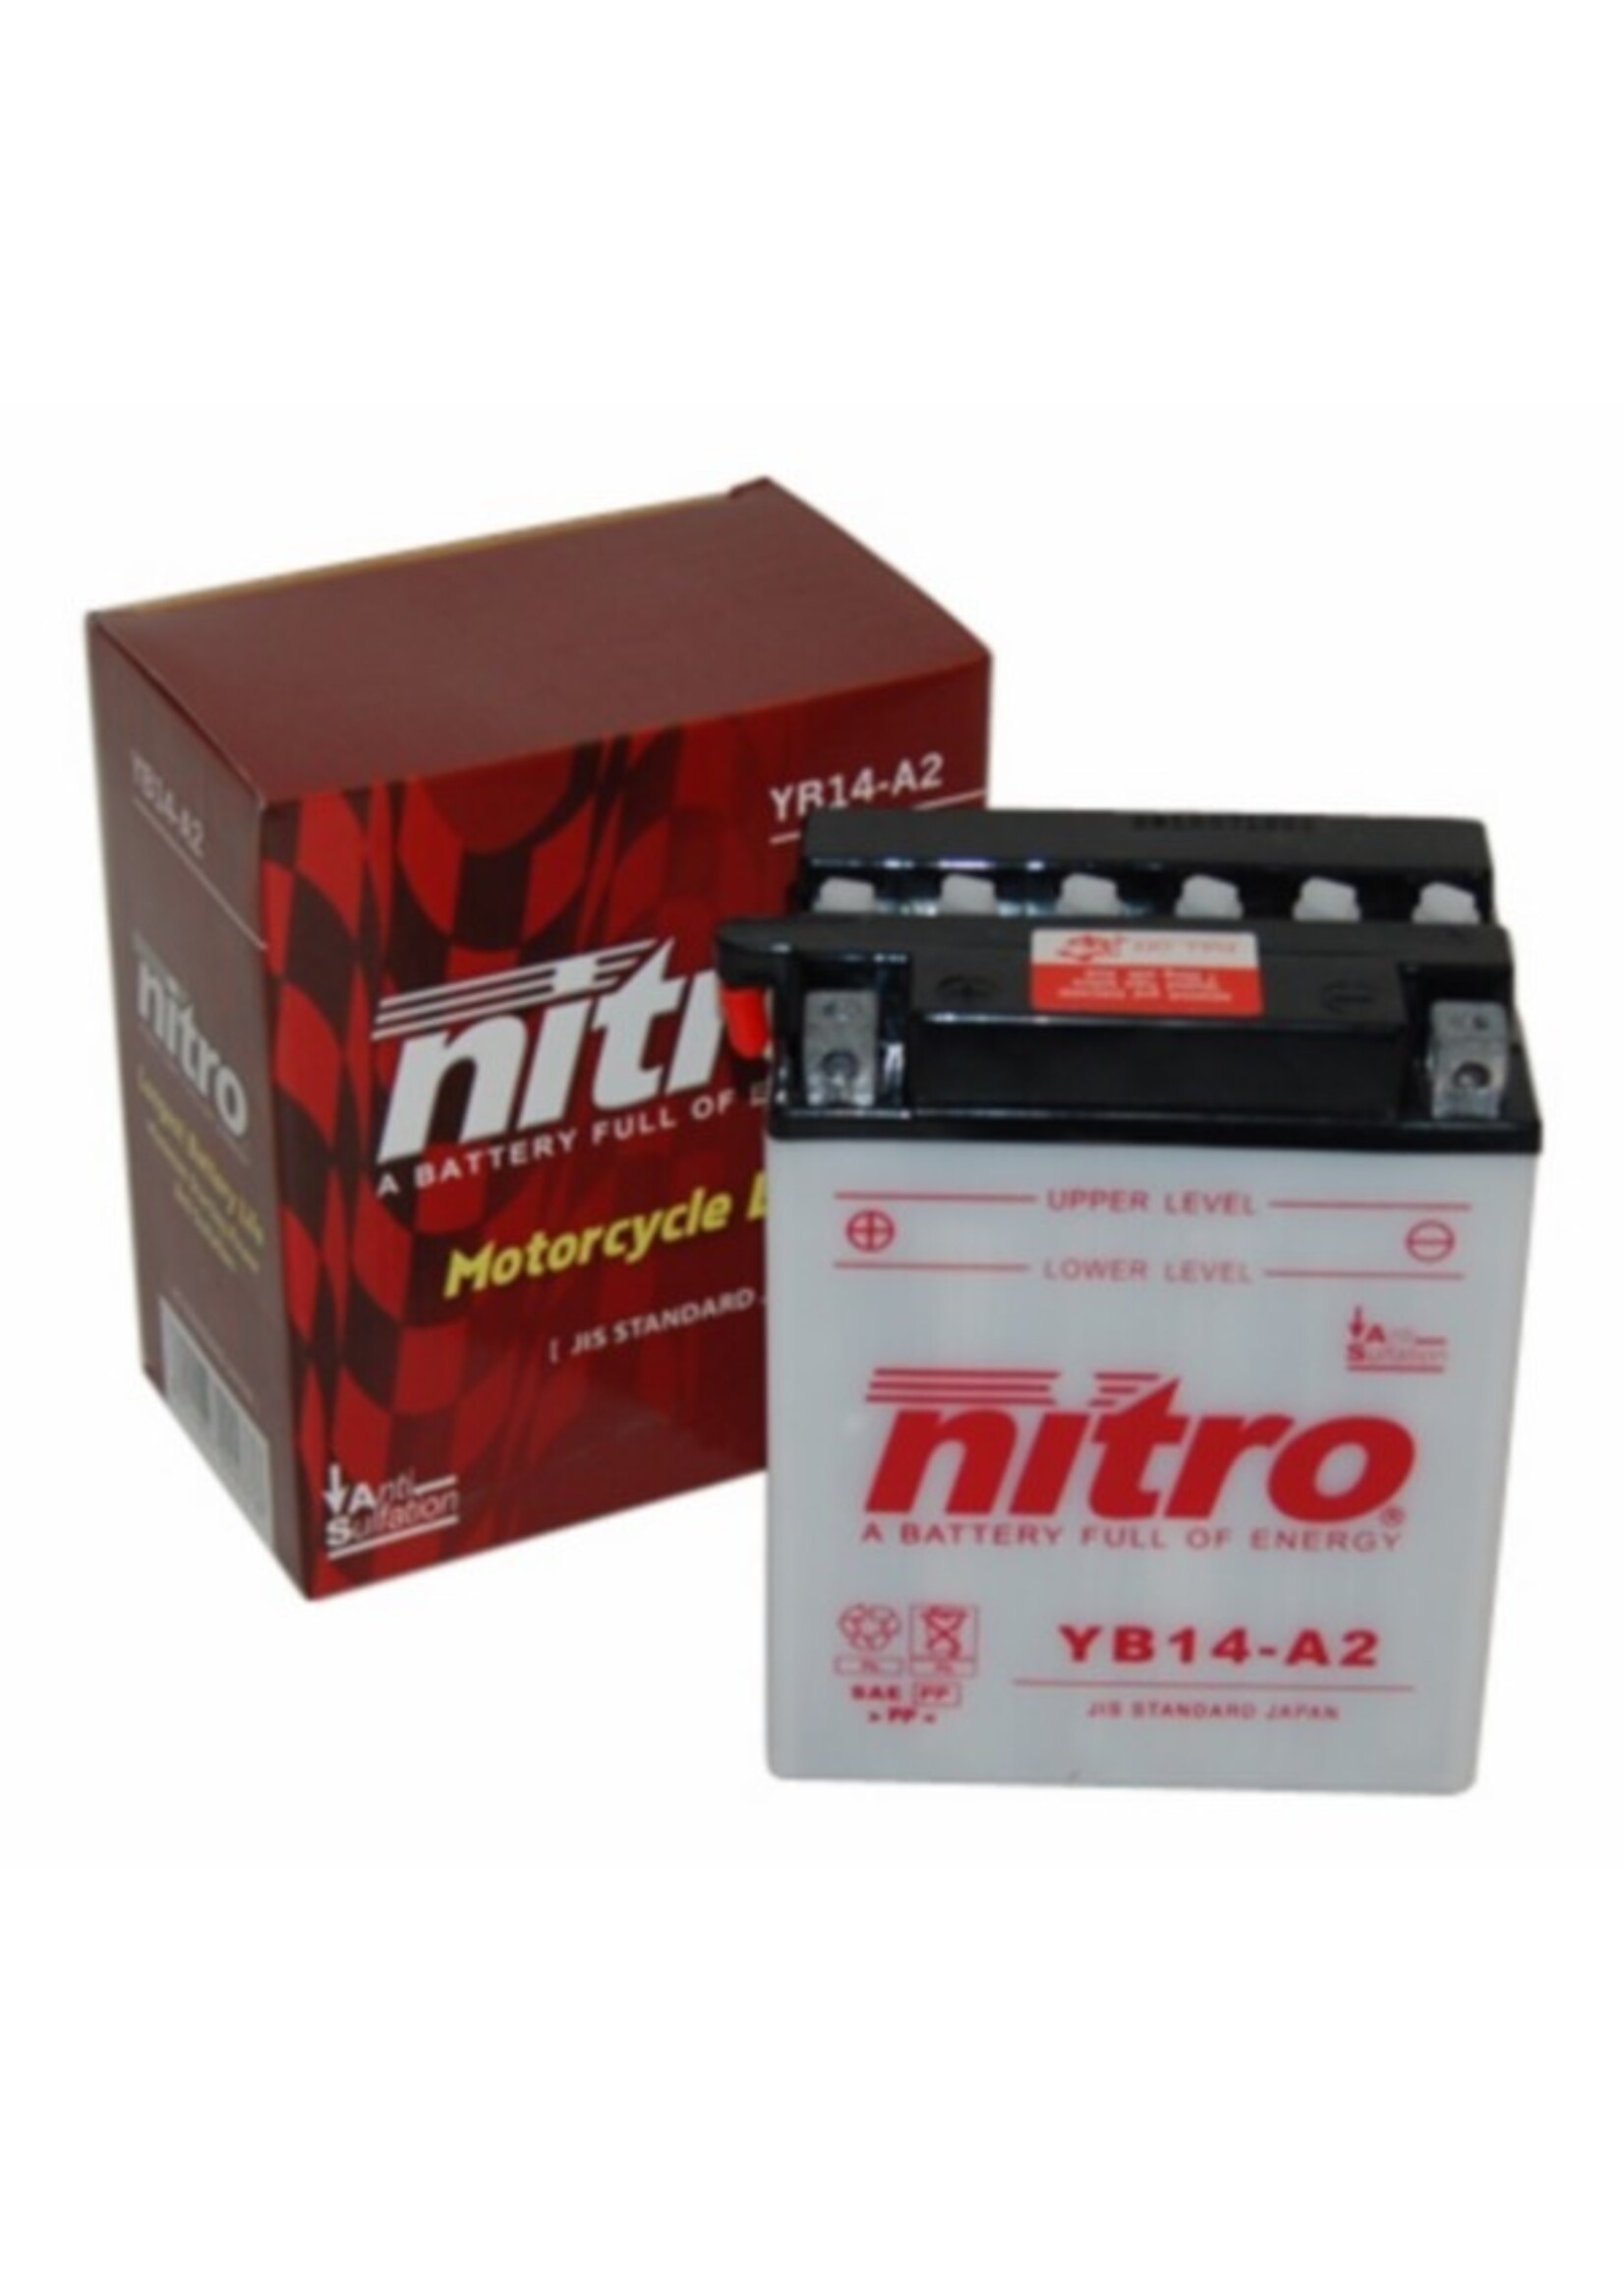 Nitro accu nb14-a2/yb14-a2 14amp nitro